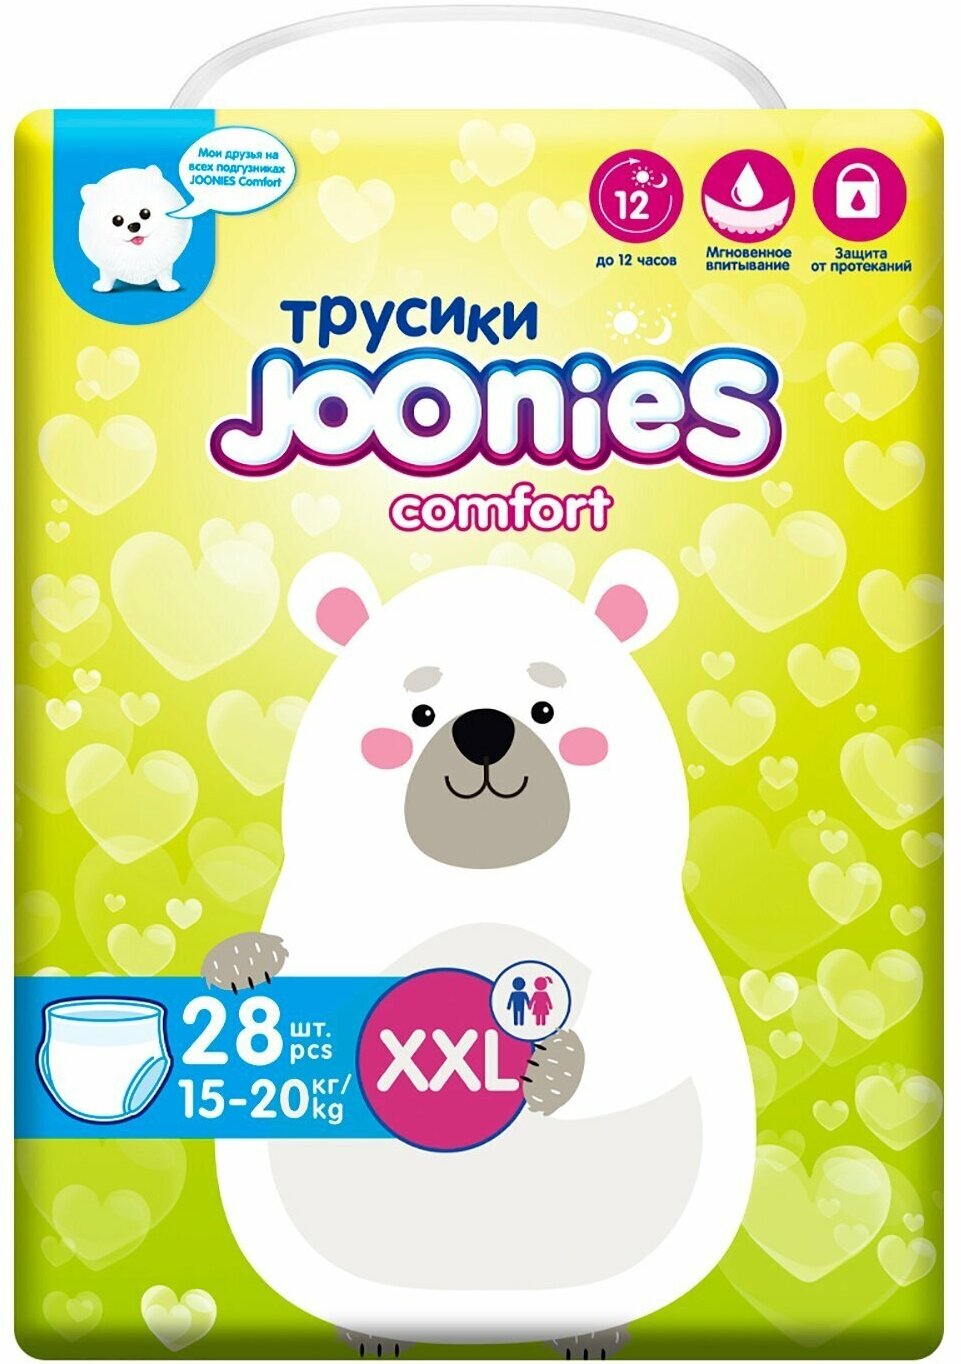 JOONIES Comfort подгузники-трусики, размер XXL (15-20 кг), 28 шт.